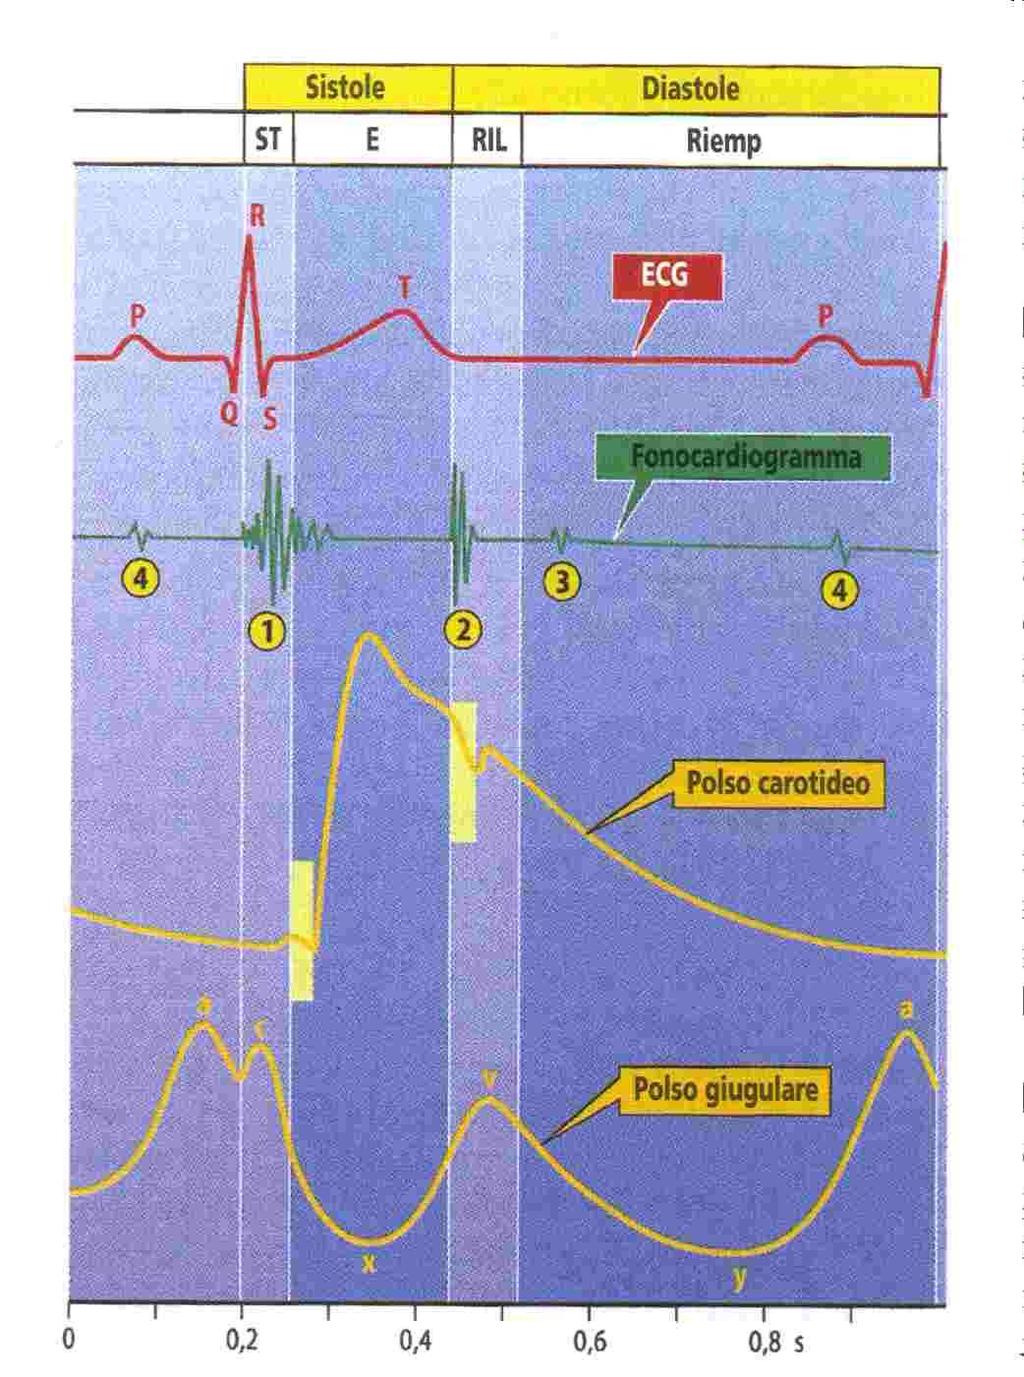 Il meccanismo del piano valvolare durante la sistole ventricolare causa un abbassamento